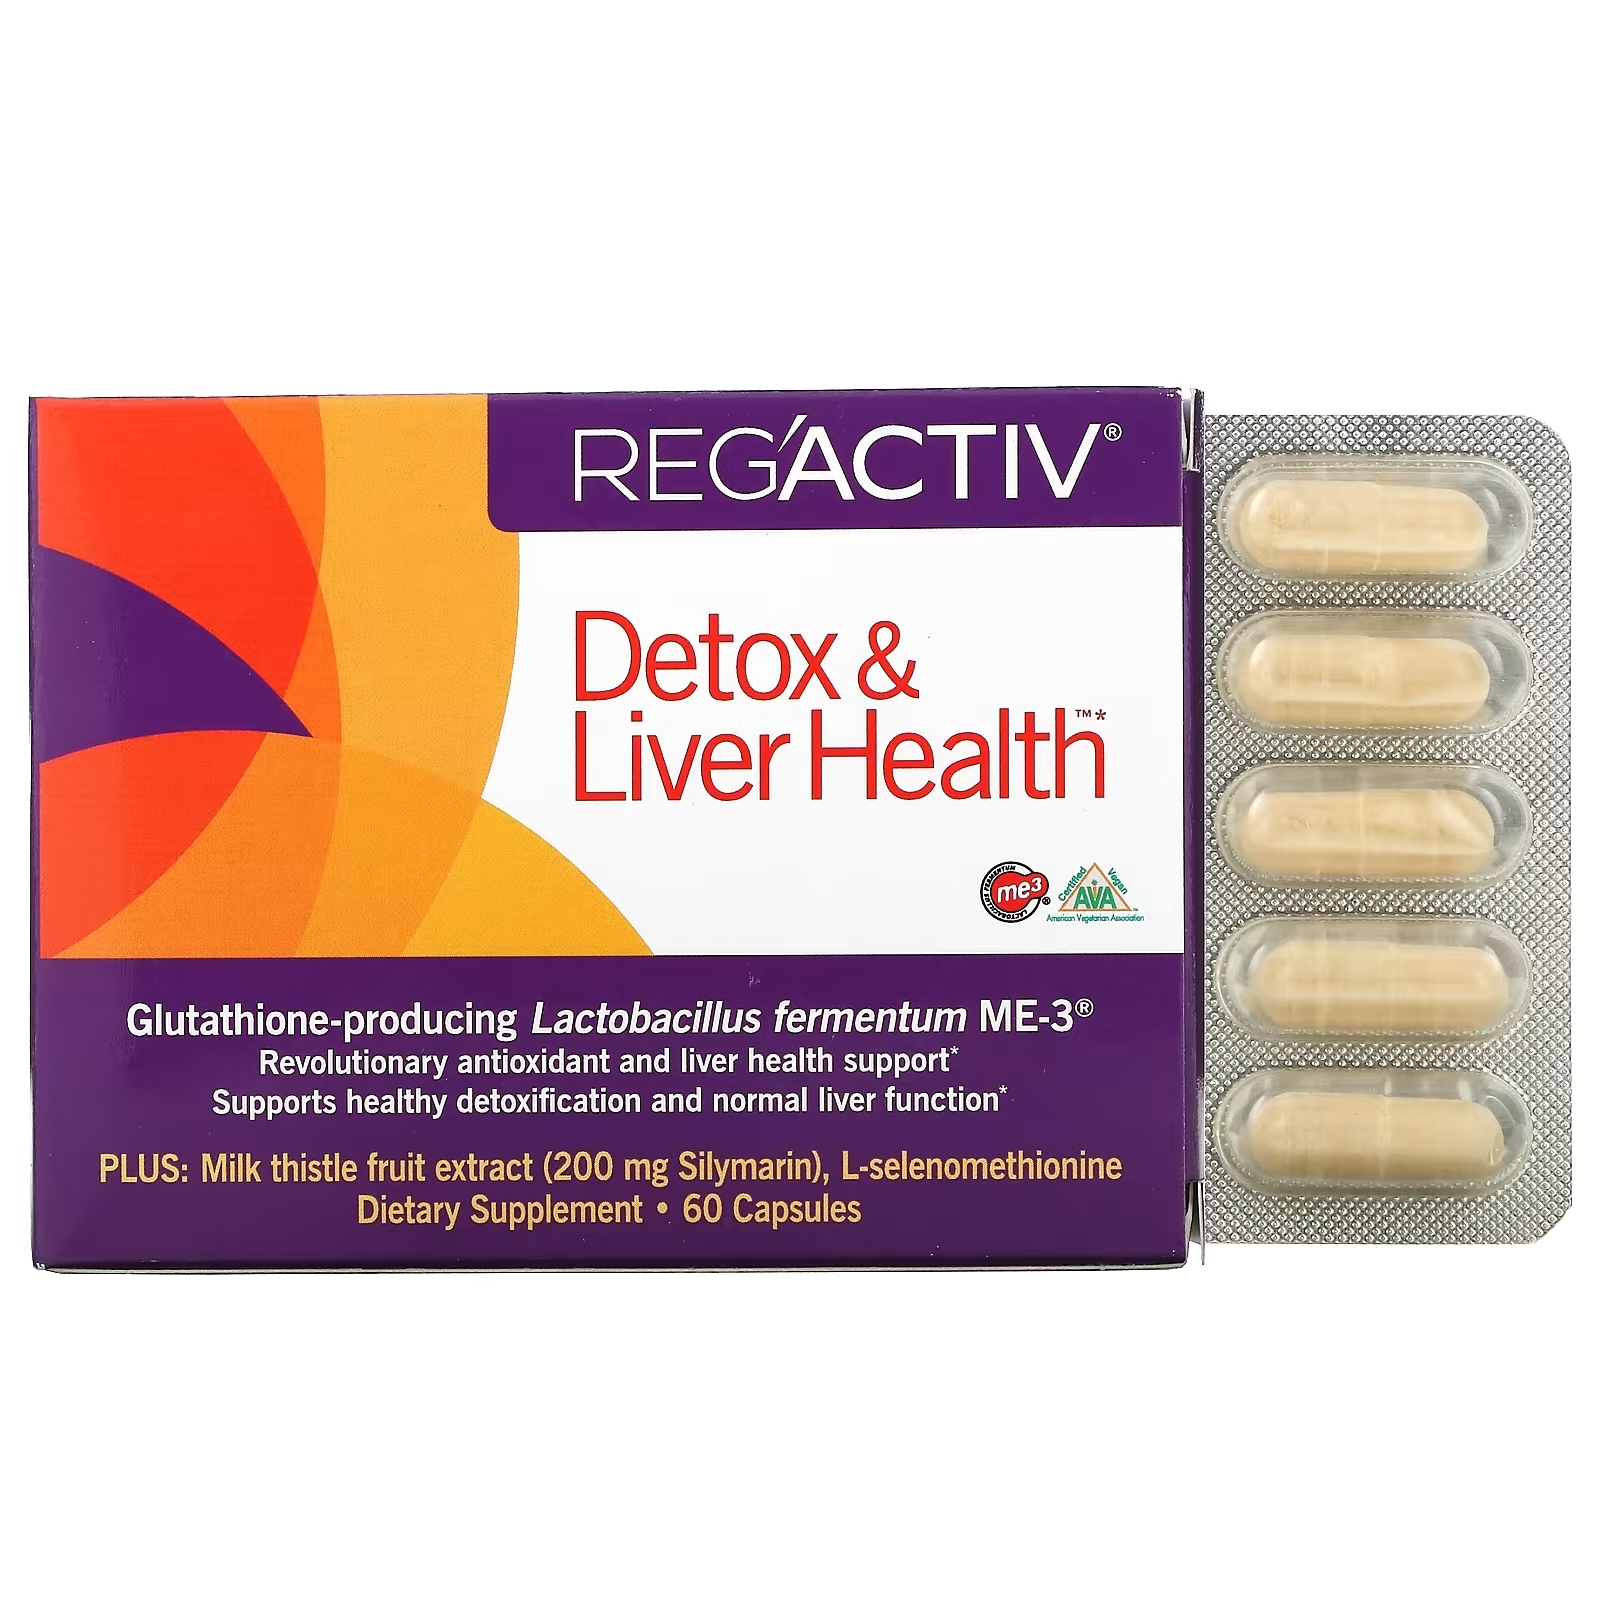 комплекс для печени liver support 60 капсул Dr. Ohhira's Reg'Activ Detox & Liver Health детокс и здоровье печени, 60 капсул